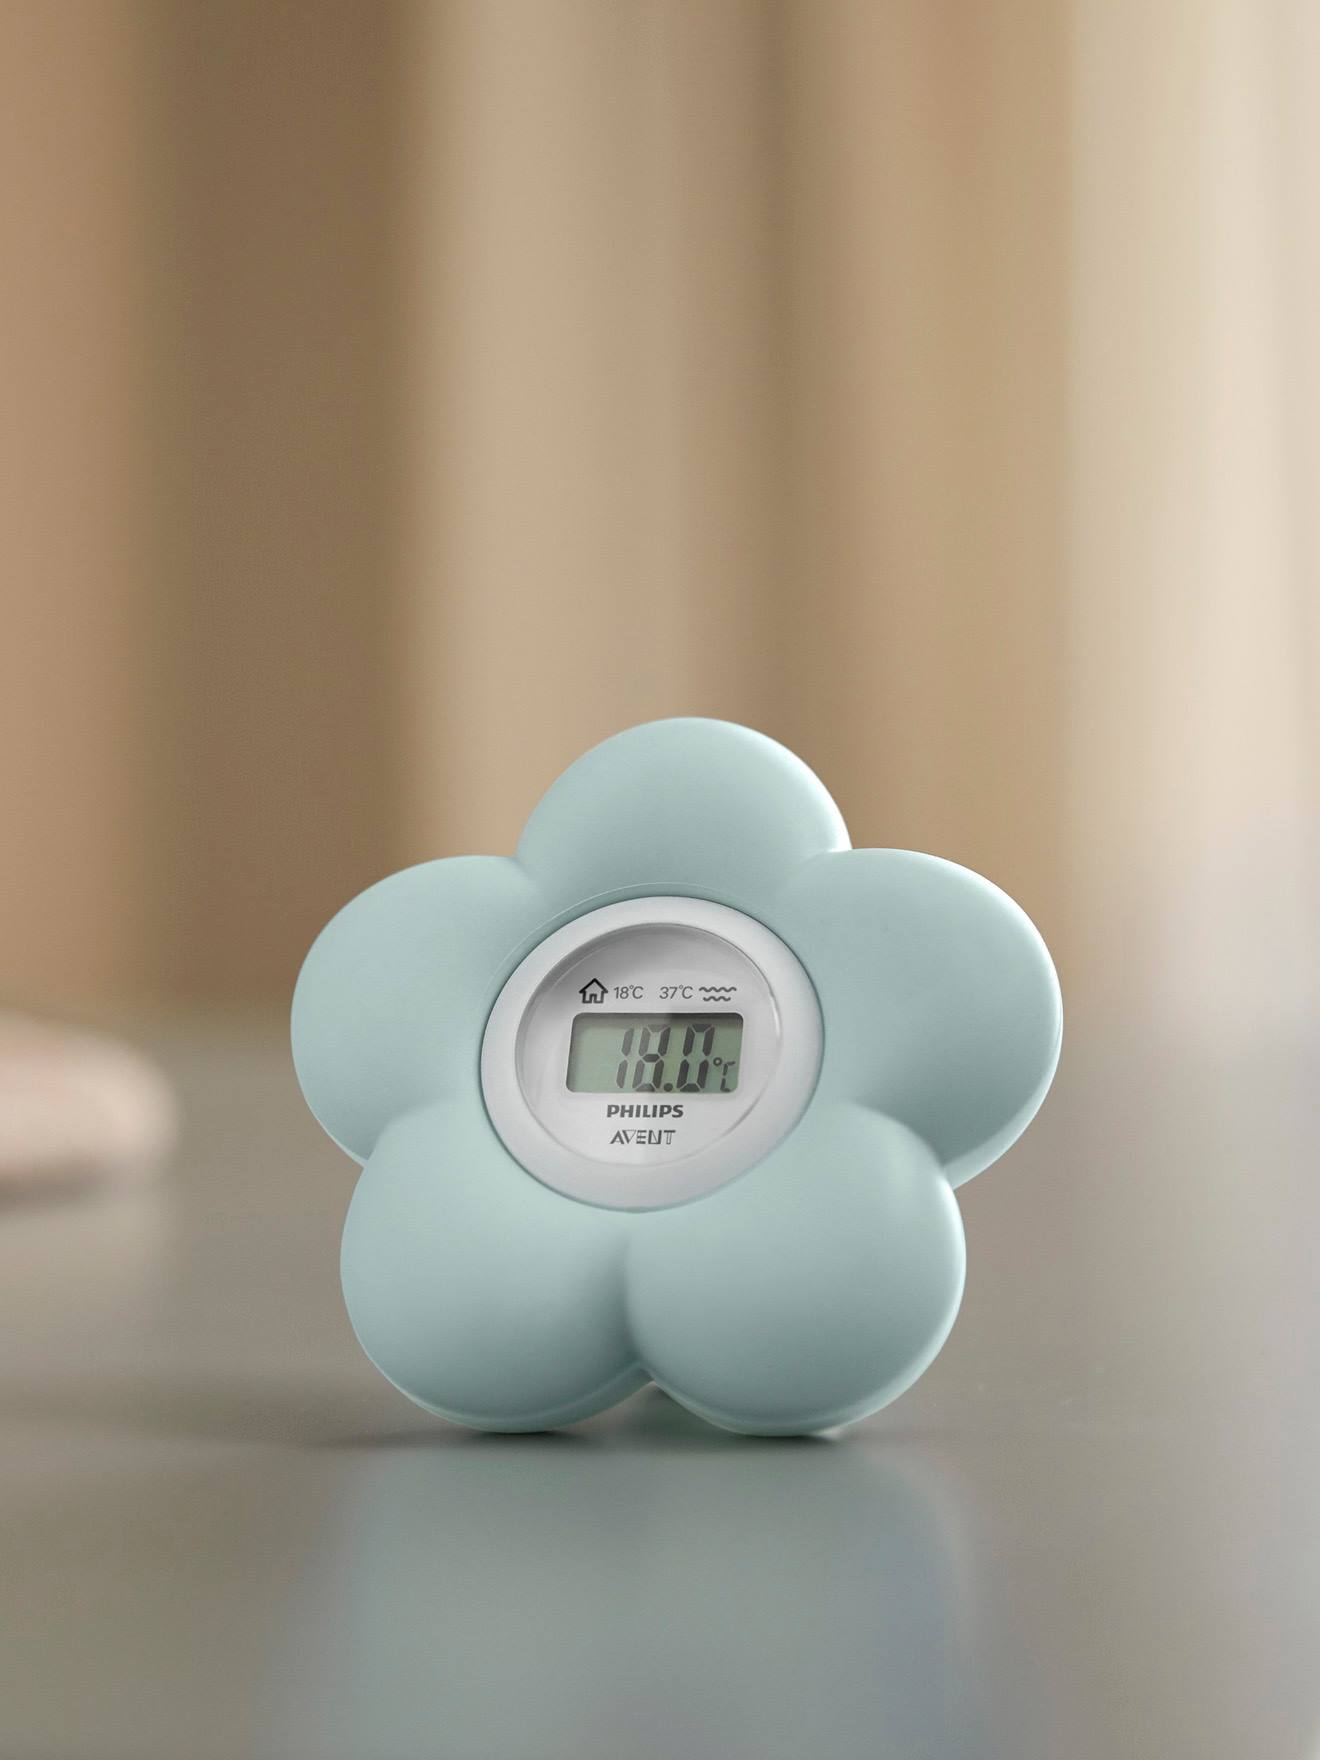 Digitale 2-in-1-thermometer Philips AVENT in de vorm van een bloem groen Top Merken Winkel